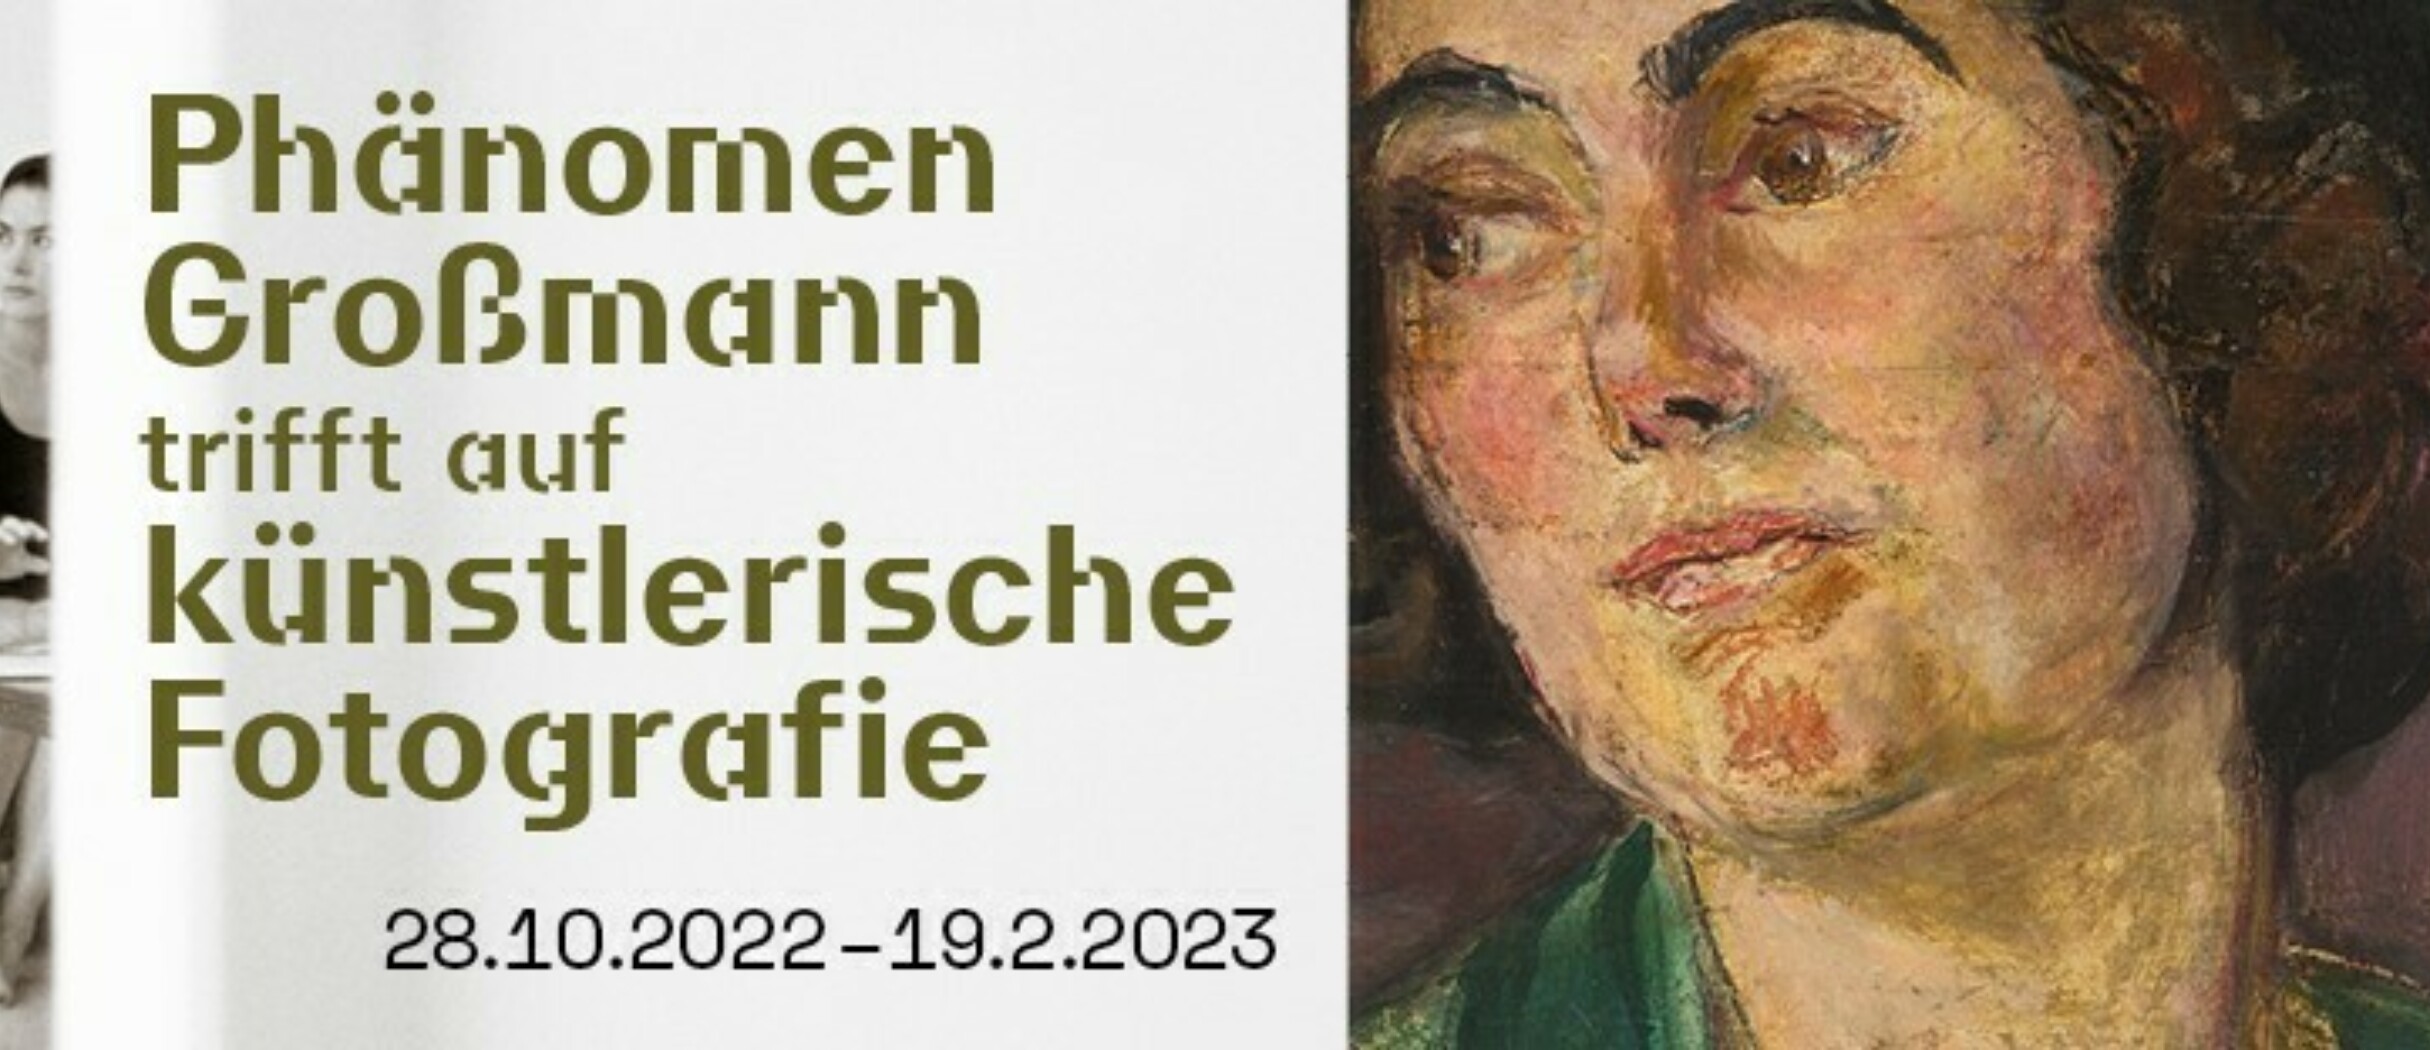 Banner Grossmann